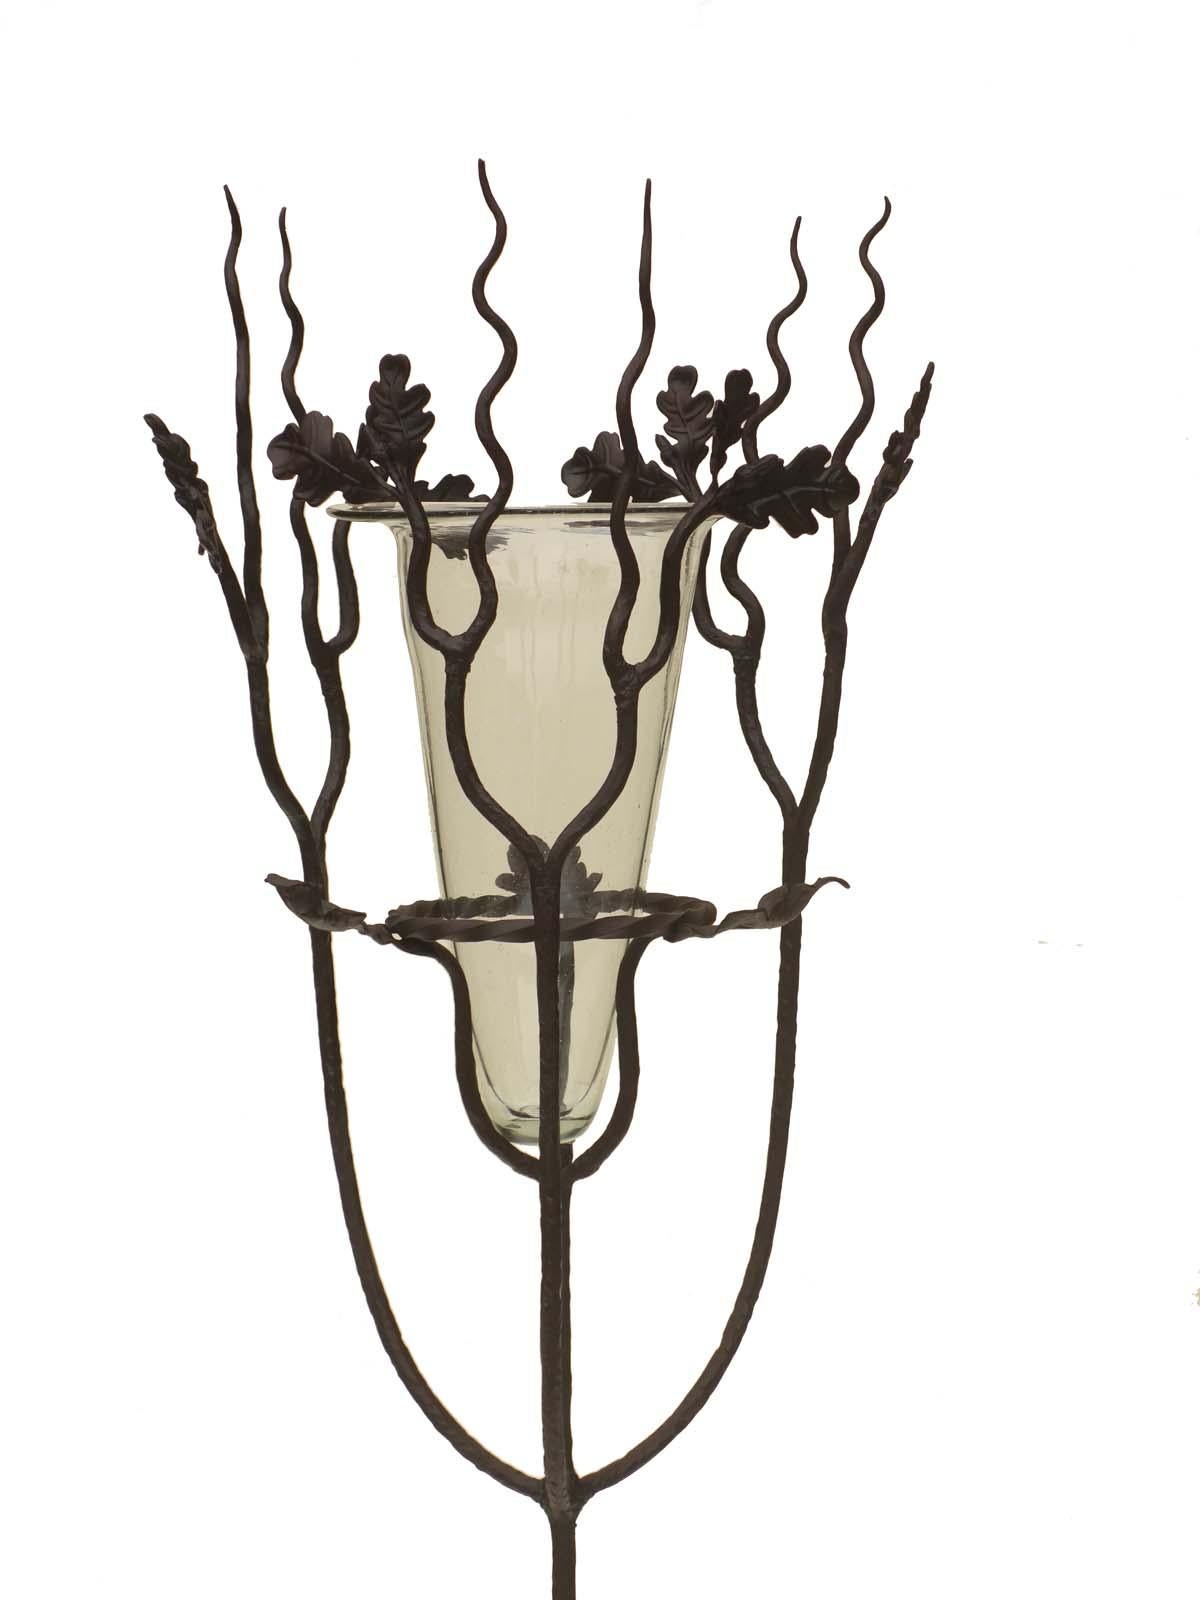 Piédestal Art Nouveau
Alberto Gerardi
Italie, début 1900

Piédestal en fer forgé avec feuilles de chêne
Vase en verre soufflé transparent de Murano

Excellente condensation
Verre en parfaite condition

